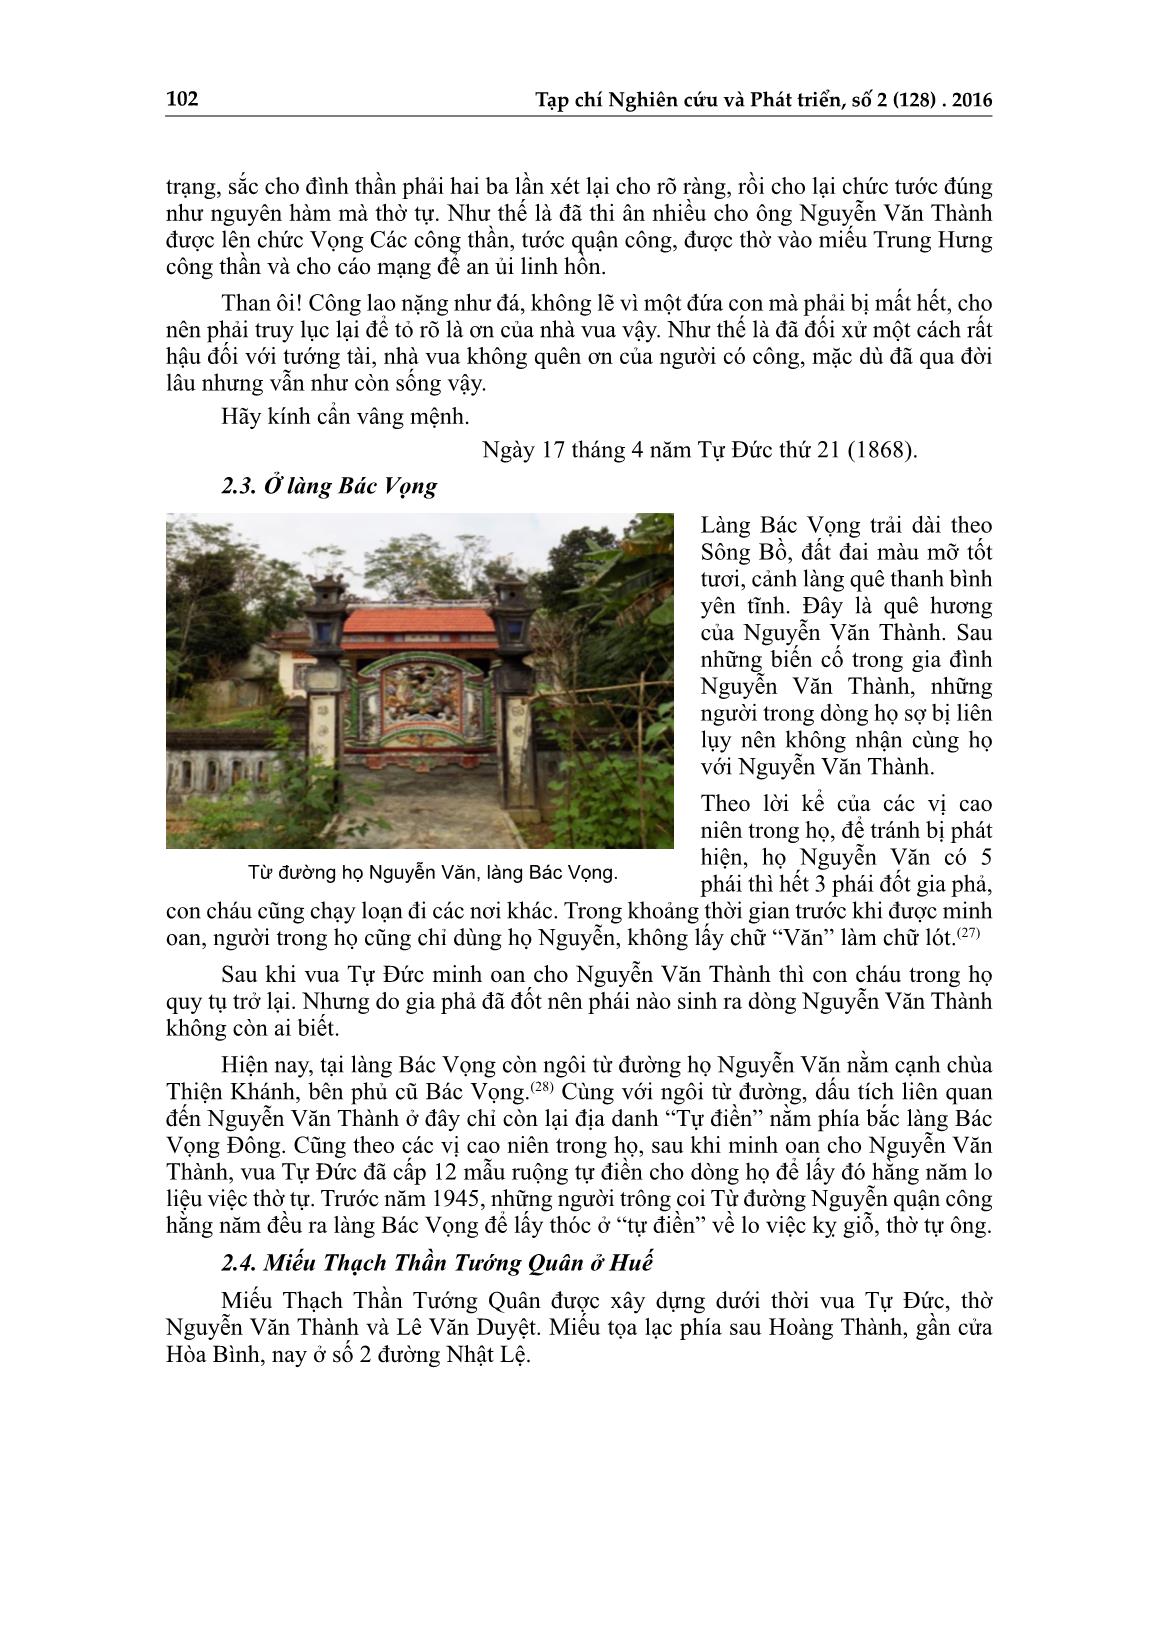 Dấu tích danh nhân Nguyễn Văn Thành trên đất Thừa Thiên Huế trang 8